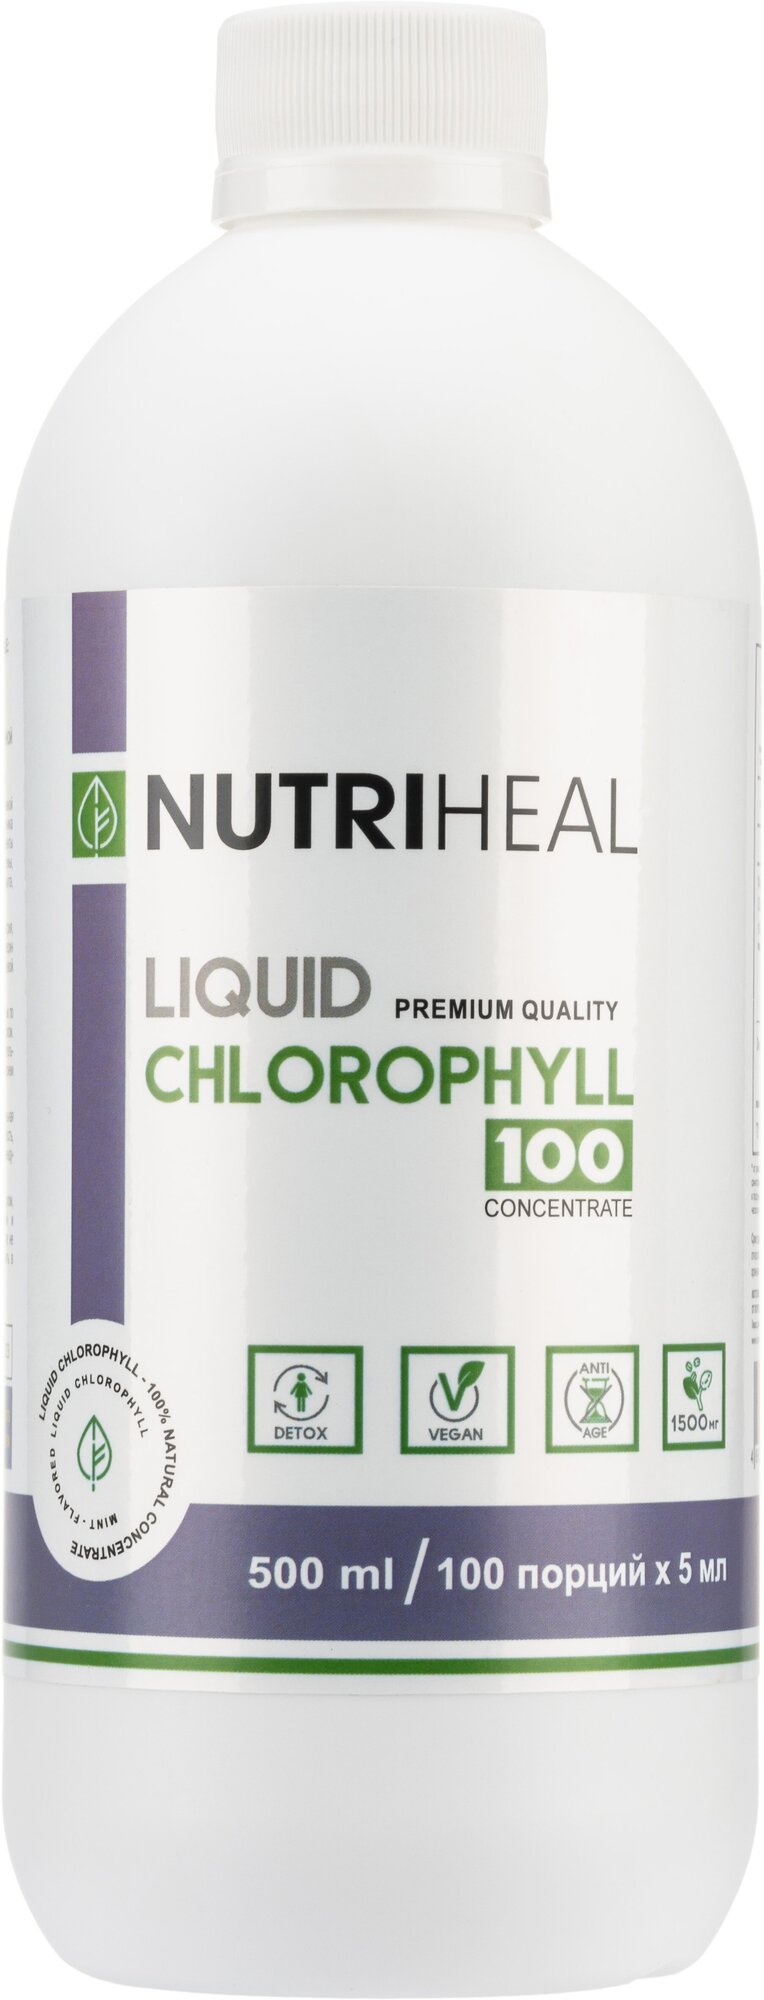 Хлорофилл жидкий пищевой100 порций БАД для похудения антиоксидант для очищения организма детокс Nutriheal Сhlorophyll 500 мл